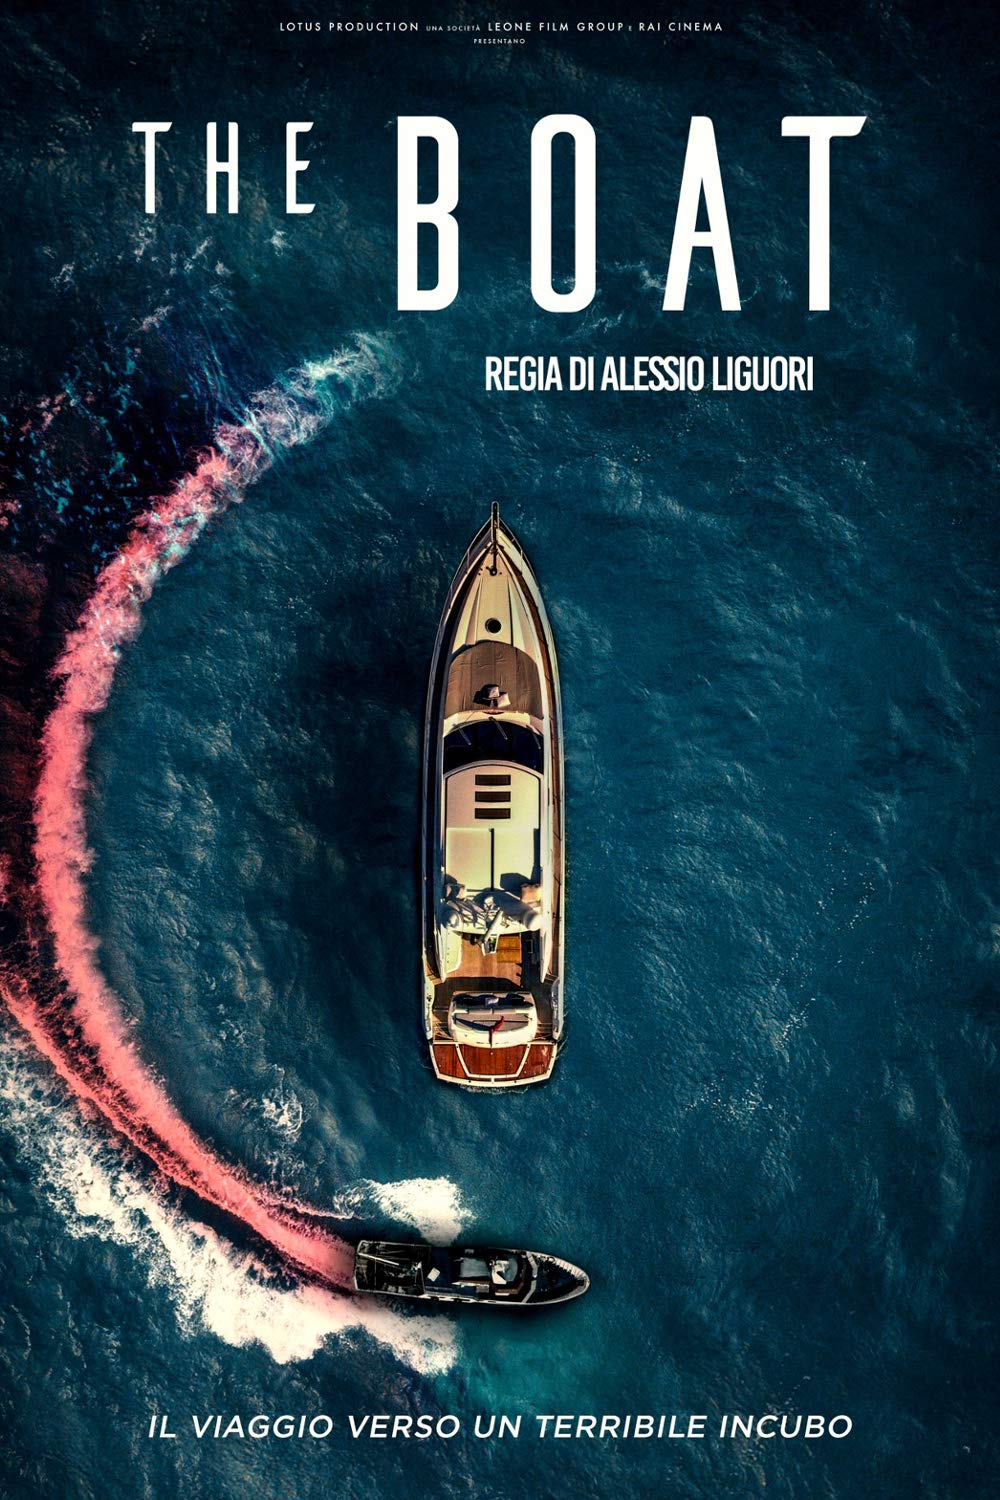 The Boat [HD] (2022)